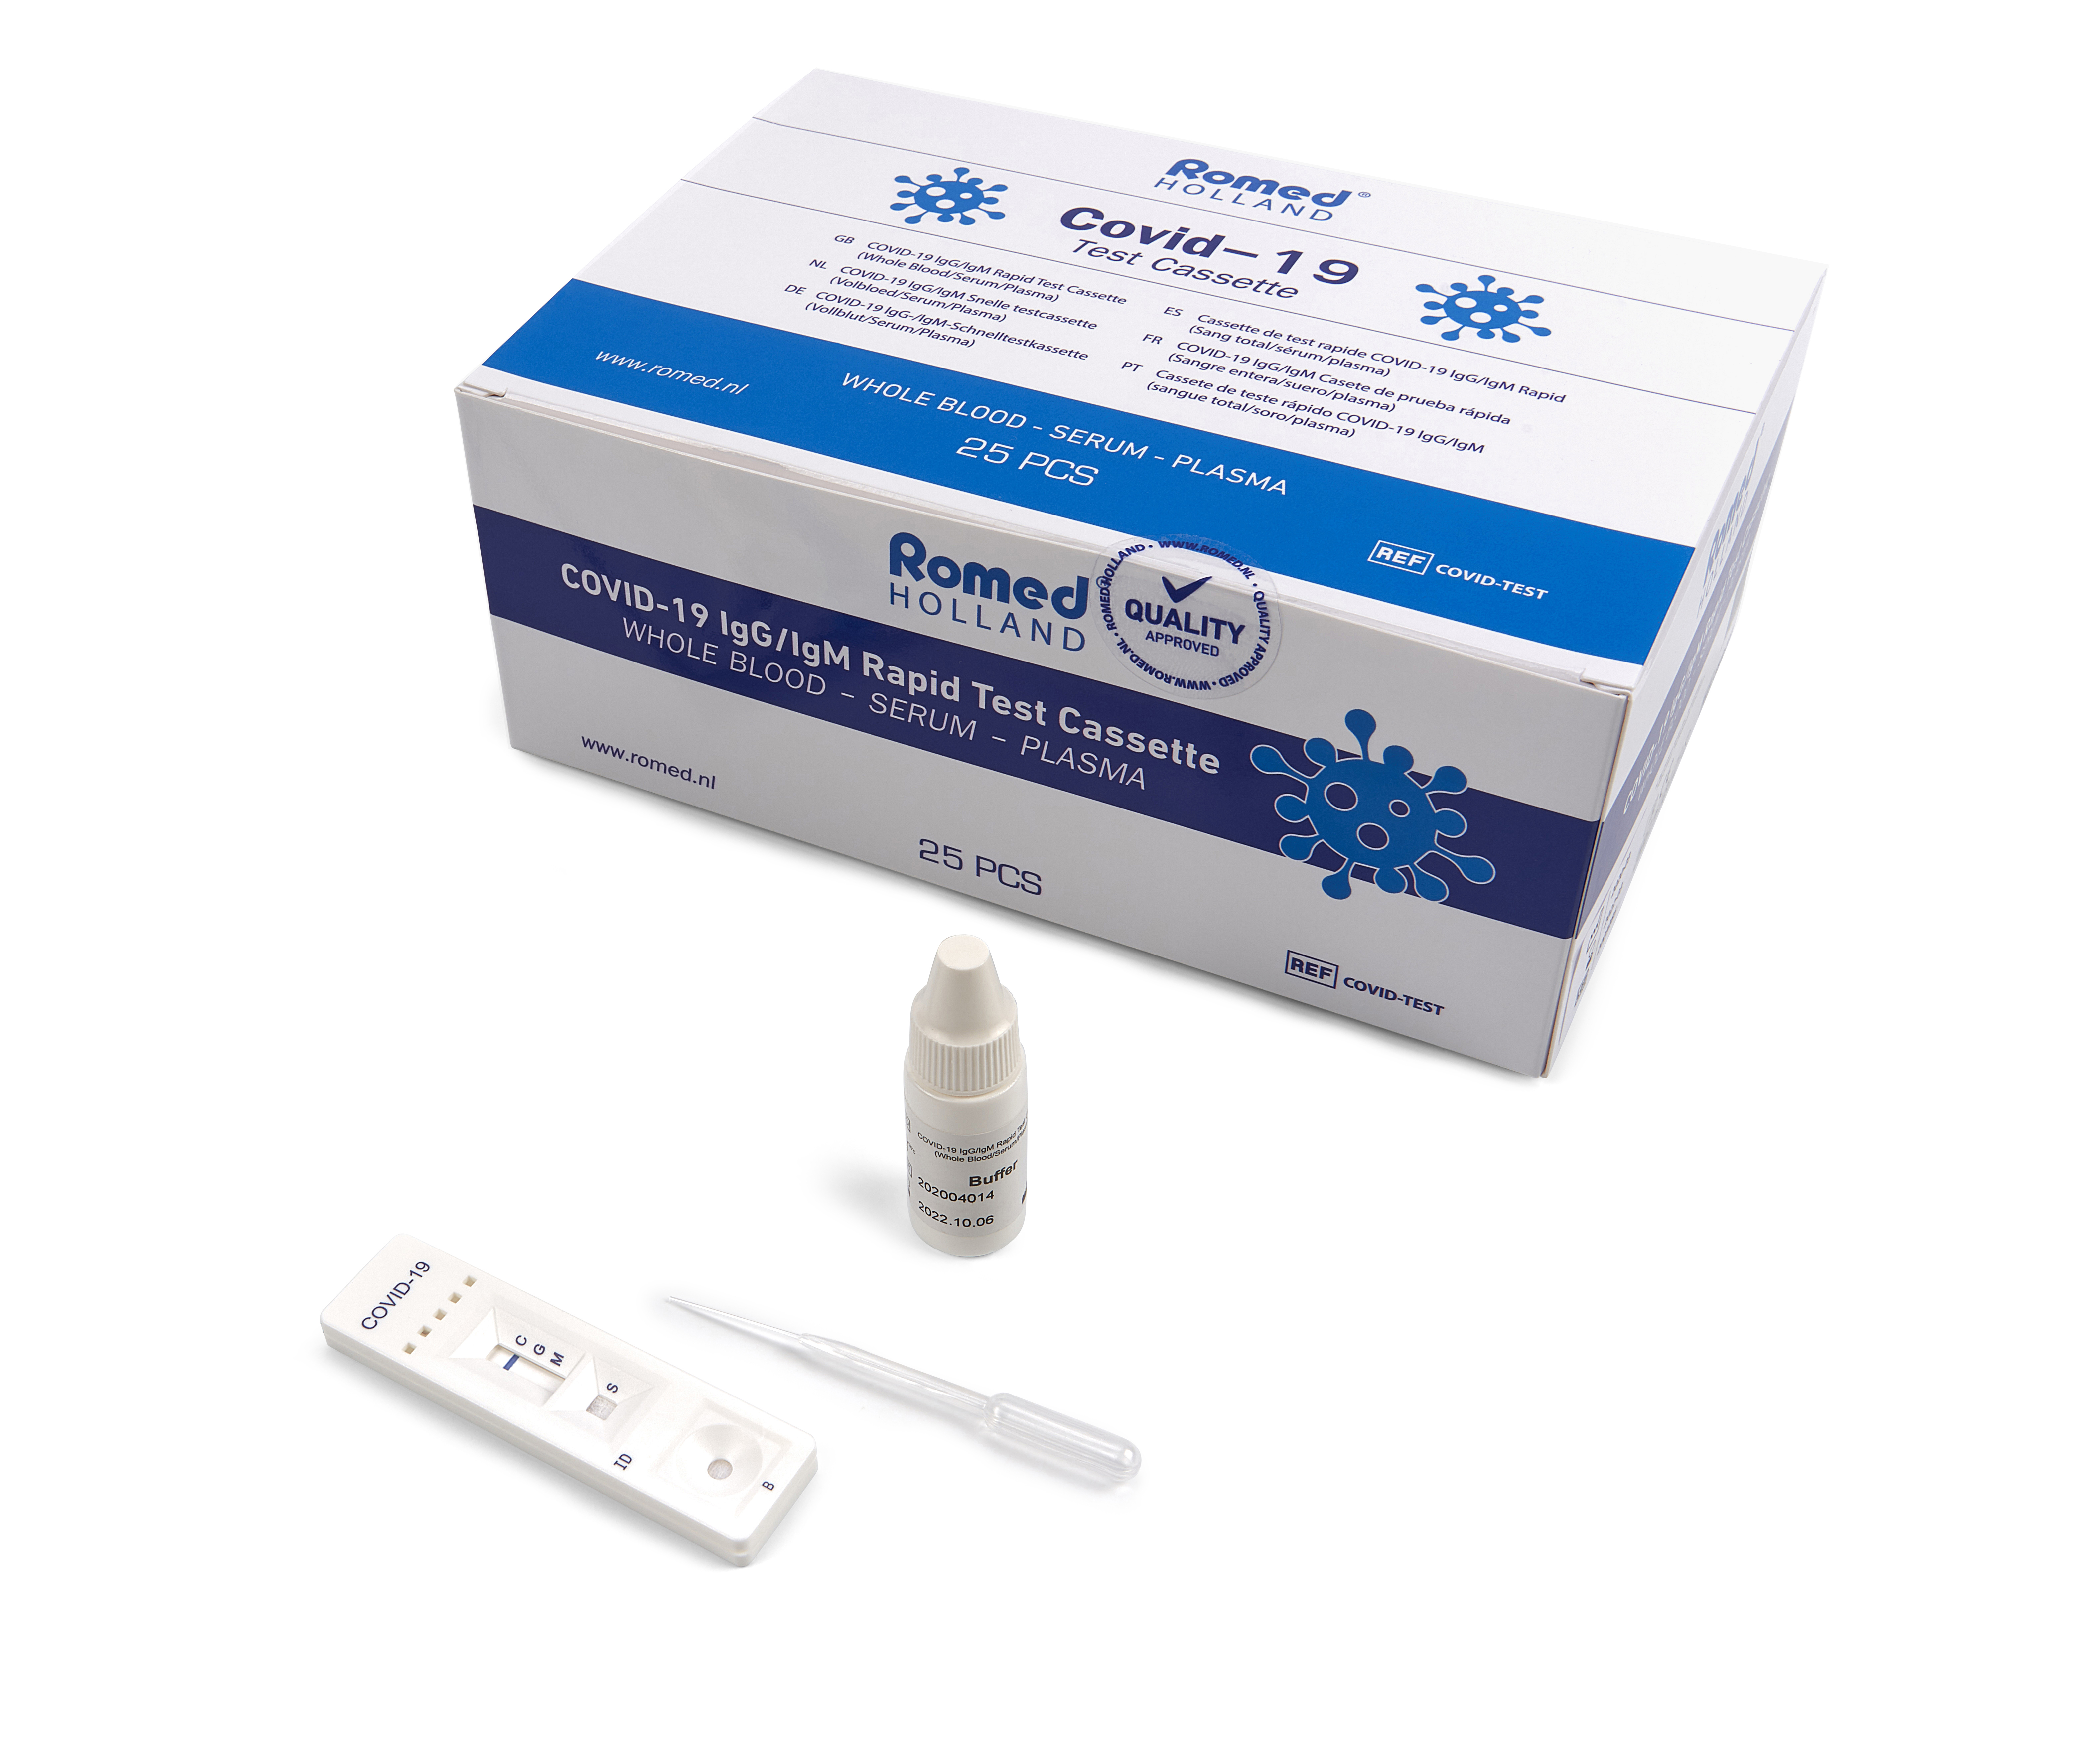 COVIDTEST Cassete de teste rápido sorológico Romed COVID-19 para a detecção de anticorpos (IgG/IgM). Este teste é um ensaio imunocromatográfico de fase sólida para a deteção rápida, qualitativa e diferencial de anticorpos lgG e lgM para o vírus SARS-CoV-2 no sangue total, soro ou plasma humanos.

Embalado a 25 un. em caixa interna, 1250 un. por caixa.